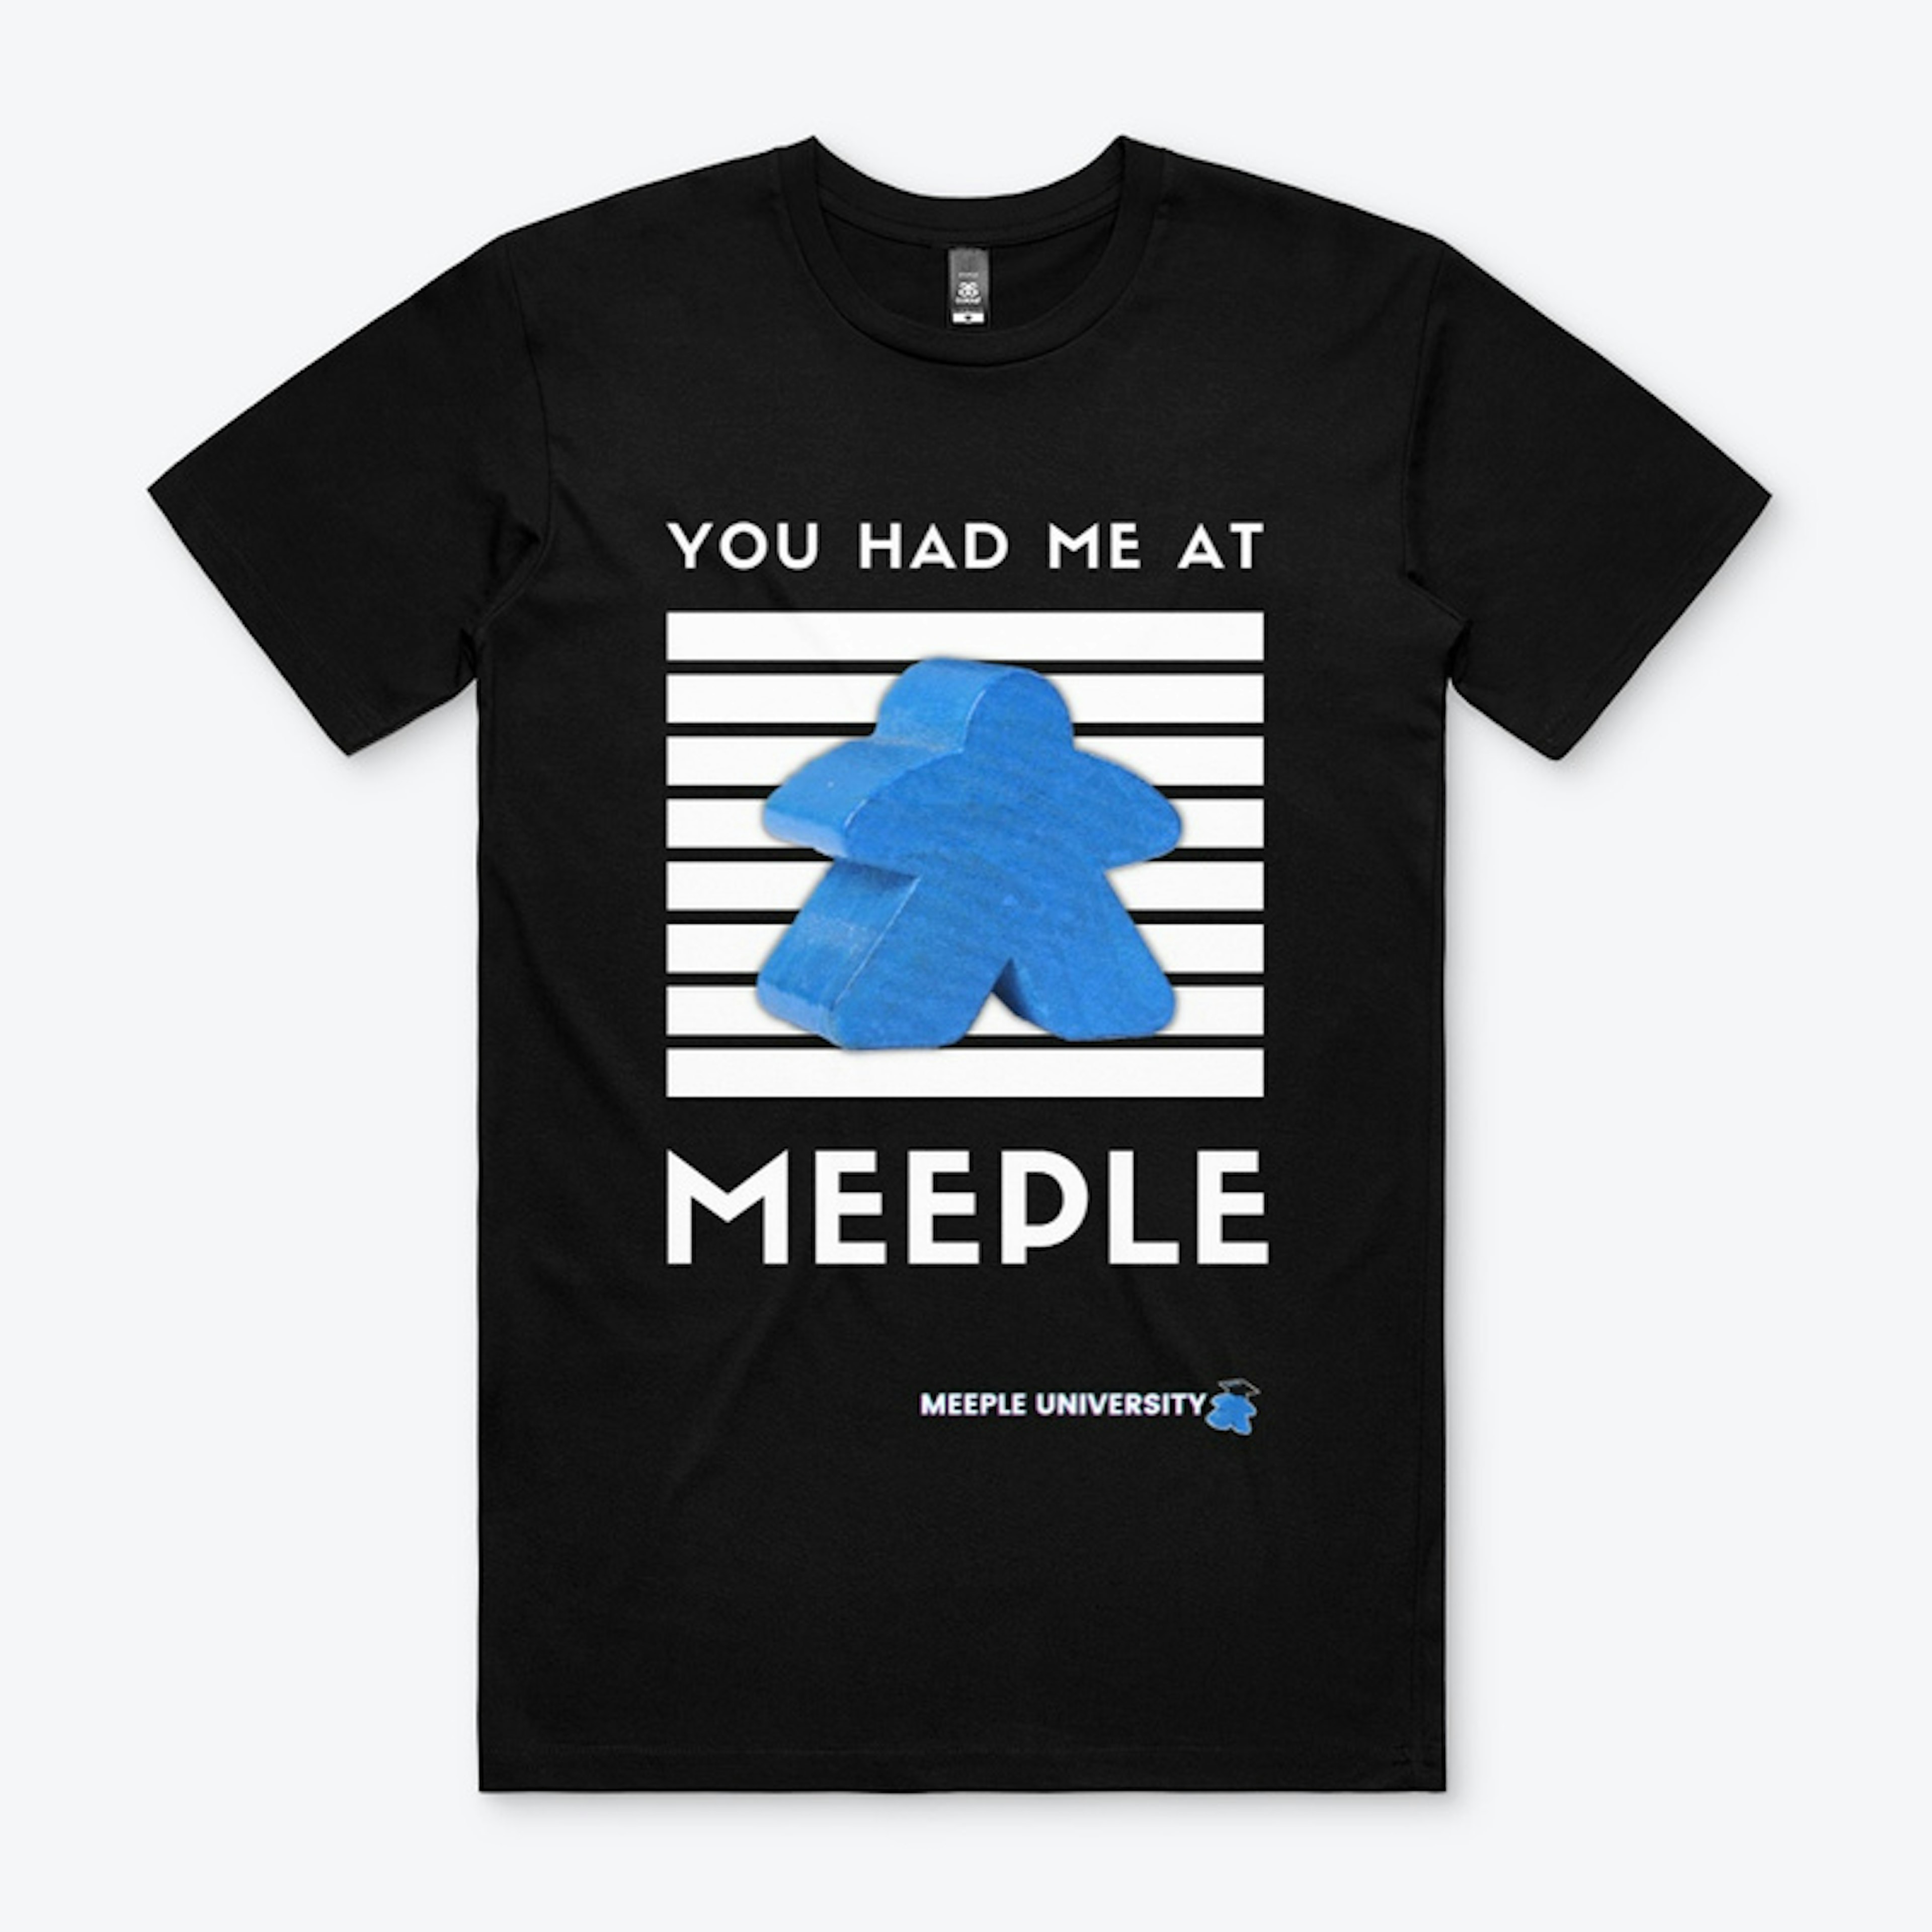 You had me on meeple...